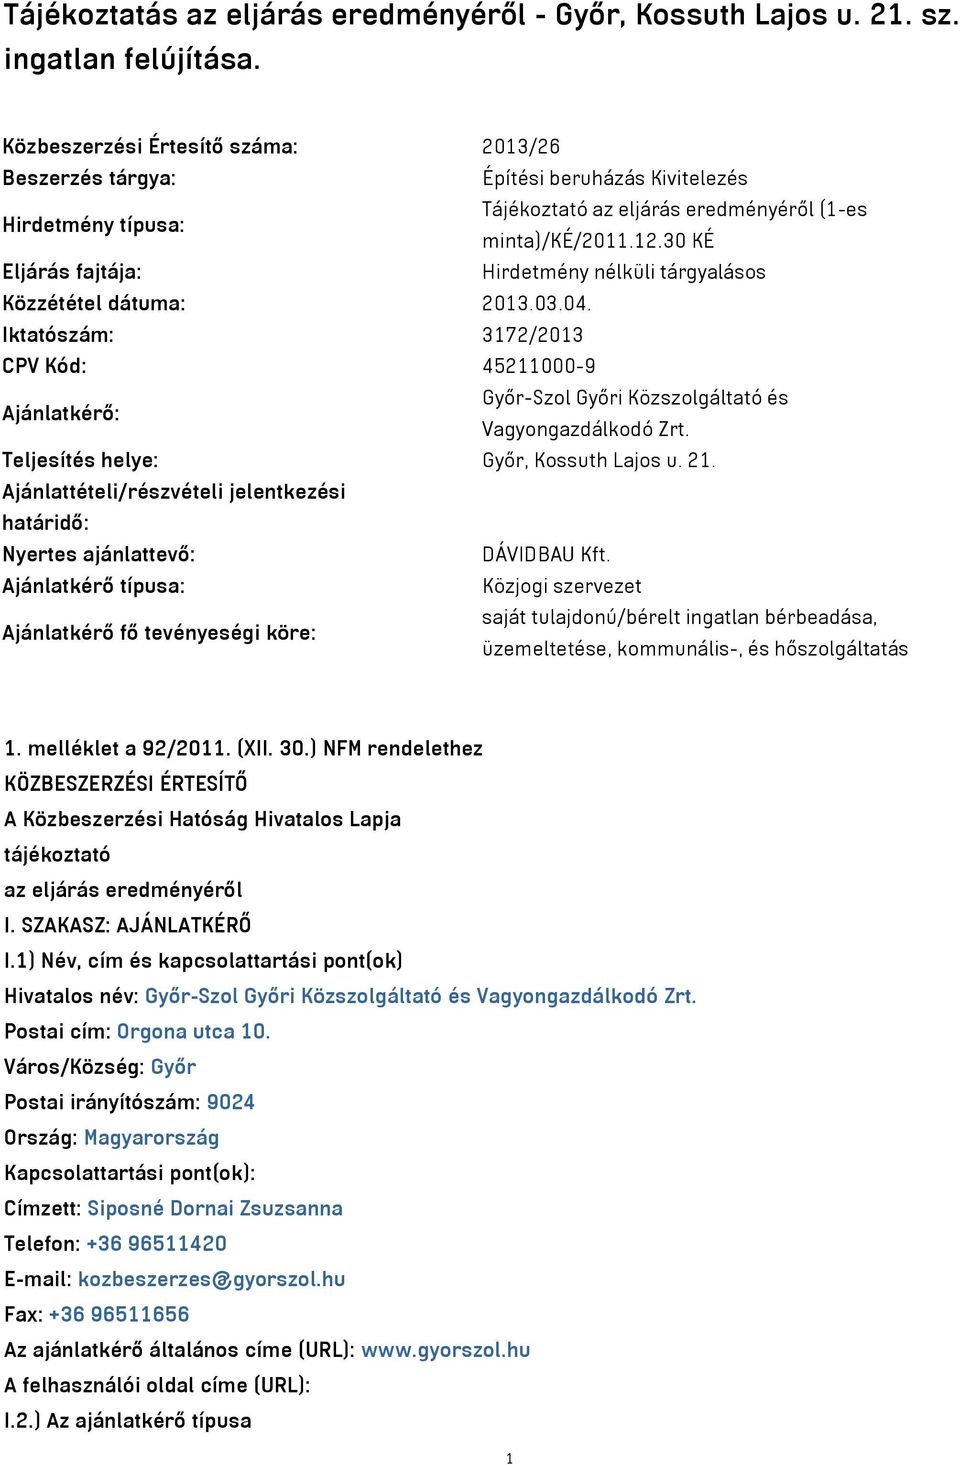 30 KÉ Eljárás fajtája: Hirdetmény nélküli tárgyalásos Közzététel dátuma: 2013.03.04. Iktatószám: 3172/2013 CPV Kód: 45211000-9 Ajánlatkérő: Győr-Szol Győri Közszolgáltató és Vagyongazdálkodó Zrt.